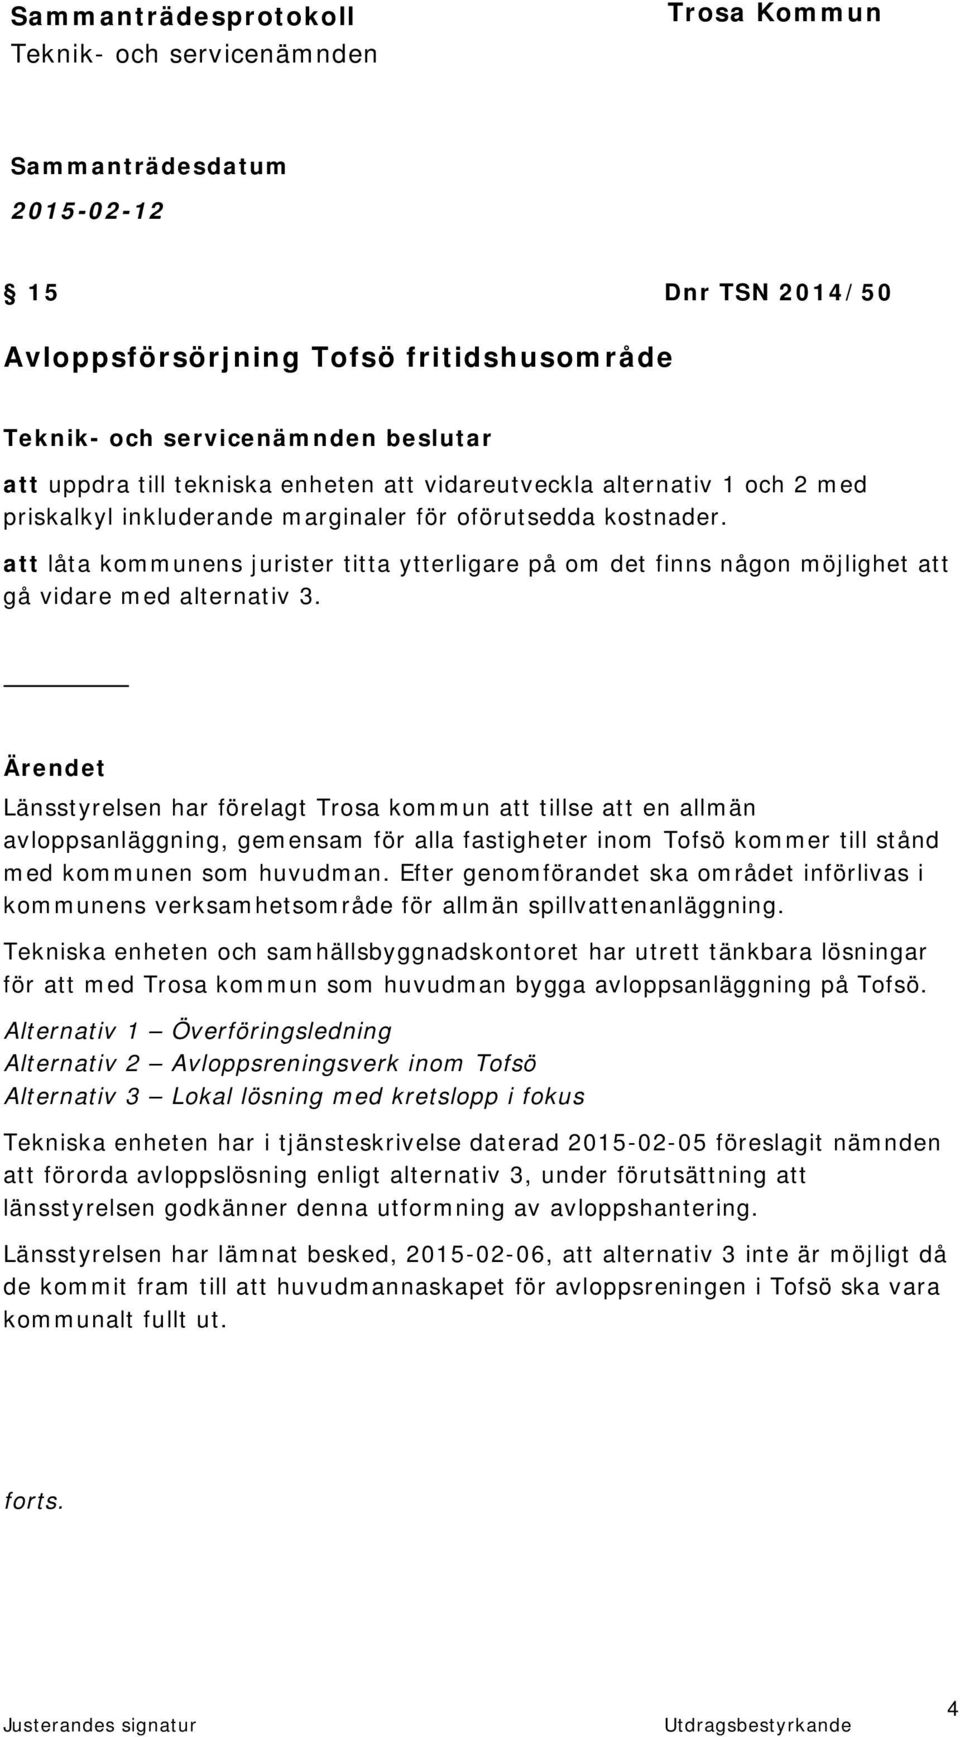 Ärendet Länsstyrelsen har förelagt Trosa kommun att tillse att en allmän avloppsanläggning, gemensam för alla fastigheter inom Tofsö kommer till stånd med kommunen som huvudman.